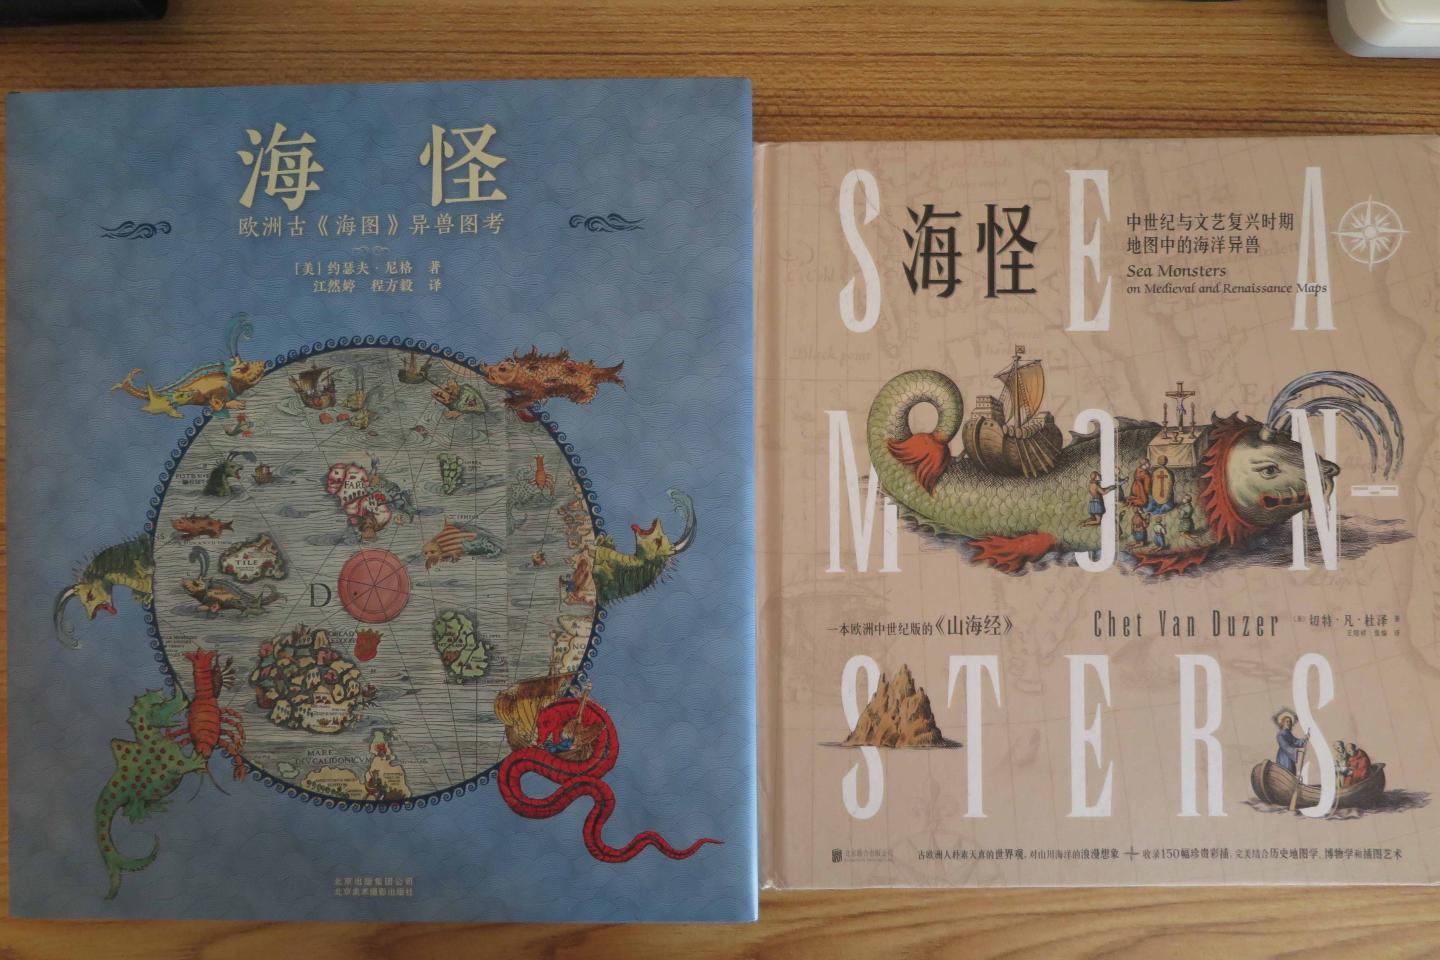 海怪:中世纪与文艺复兴时期地图中的海洋异兽与海怪-欧洲古〈海图〉异兽图考这两本书同时购买。抱着欣赏艺术的眼光来看这本书，还是很好的。个人认为这本书并不是科普书，太较真没必要。想象力的发挥和提升也是读书的一大乐趣，这是现在电子产品以及大型3D游戏所不同的感觉，而且很多灵感也是来自于这种艺术与“科学”结合的图书。这本书的2张附赠海怪地图不太好，大约A5纸张大小，而且感觉有一张好像内容不全？